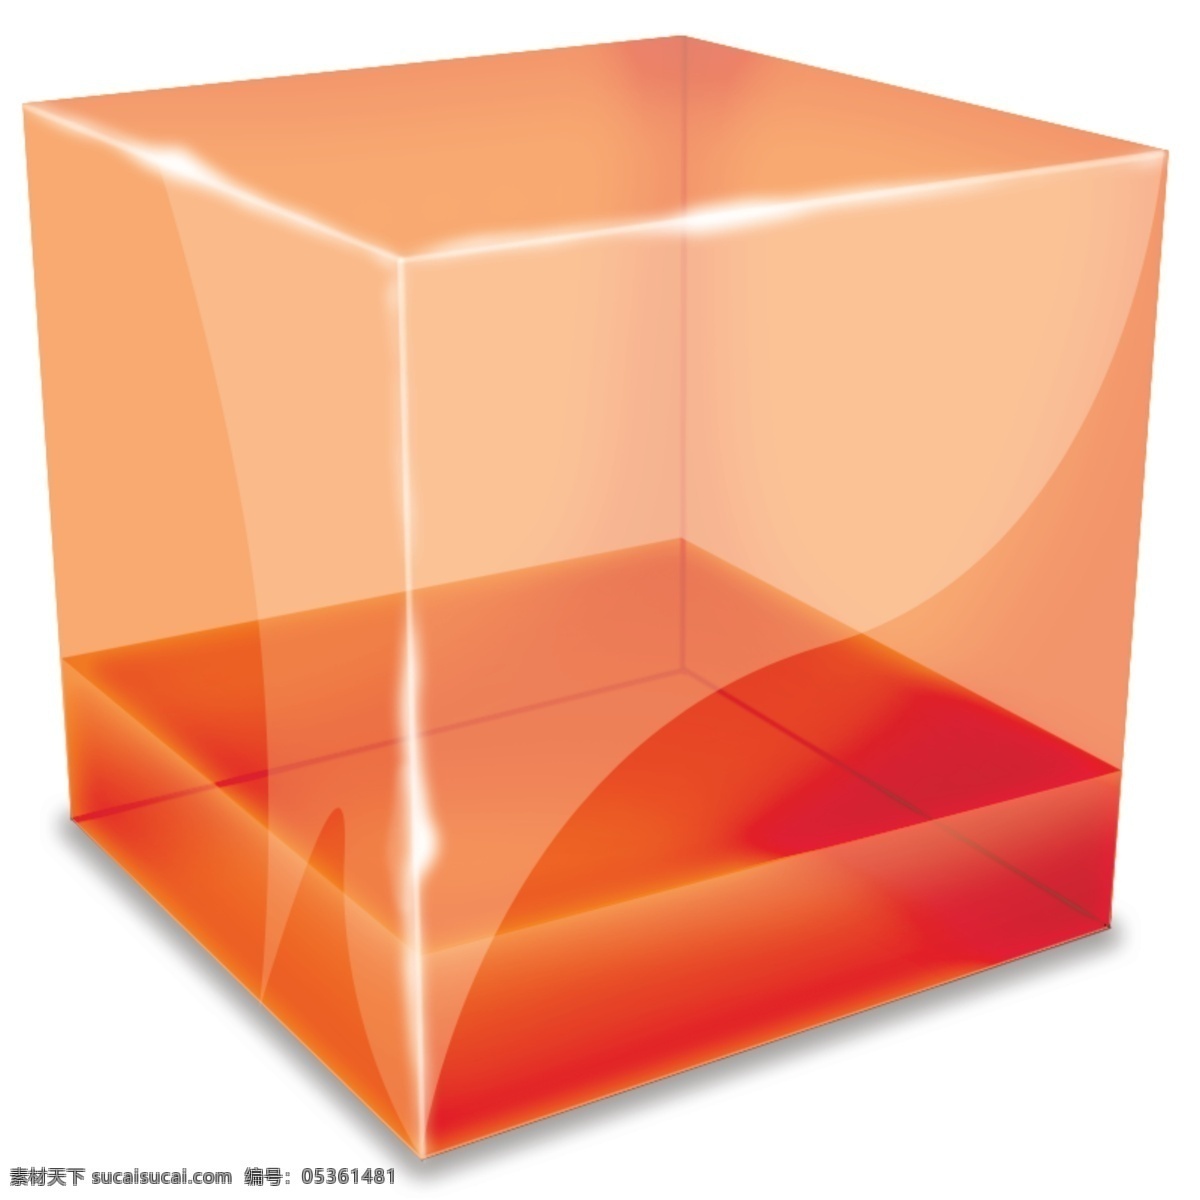 3d 玻璃 立方体 包装 立方体特效 绚丽 水晶体 立方块 正方体 方块 3d方块 数码方块 潮流 梦幻 网页模板 源文件 包装设计